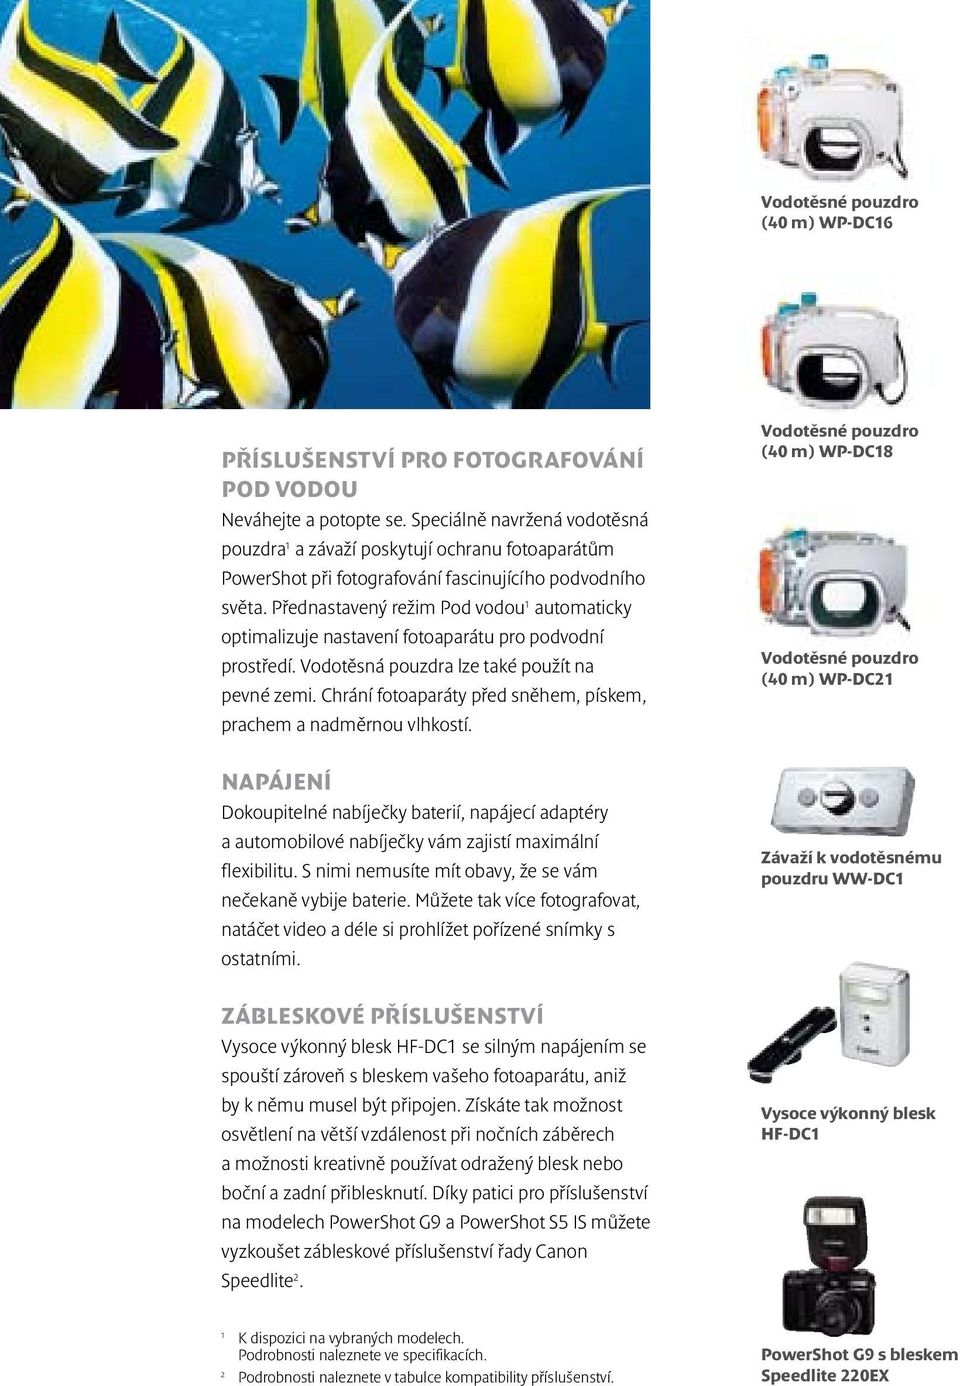 Přednastavený režim Pod vodou 1 automaticky optimalizuje nastavení fotoaparátu pro podvodní prostředí. Vodotěsná pouzdra lze také použít na pevné zemi.